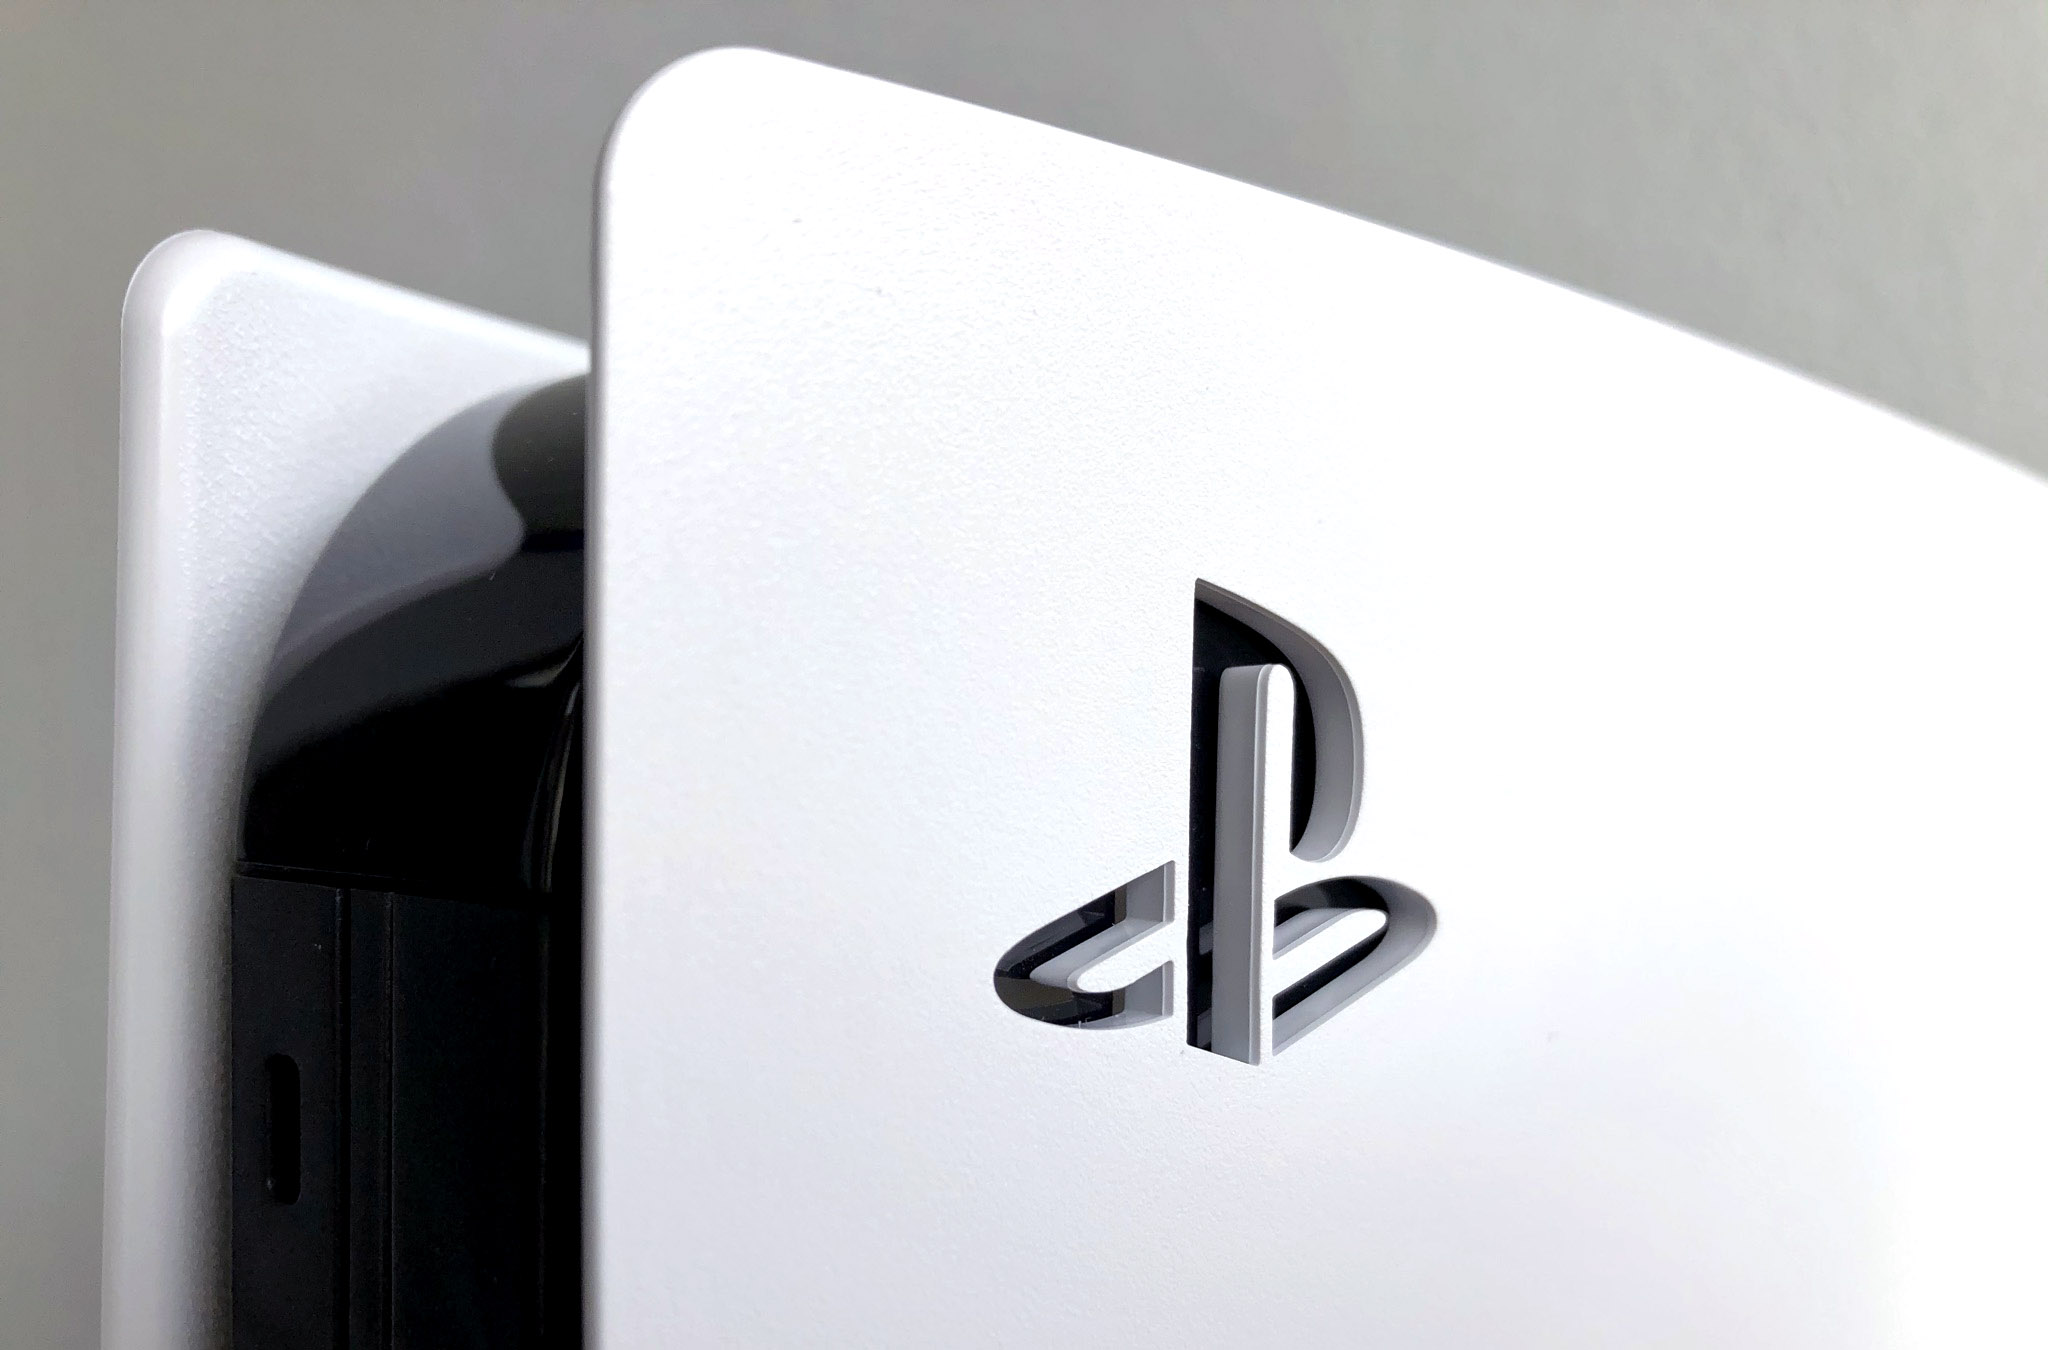 PlayStationin Logo PlayStation 5:n kyljessä